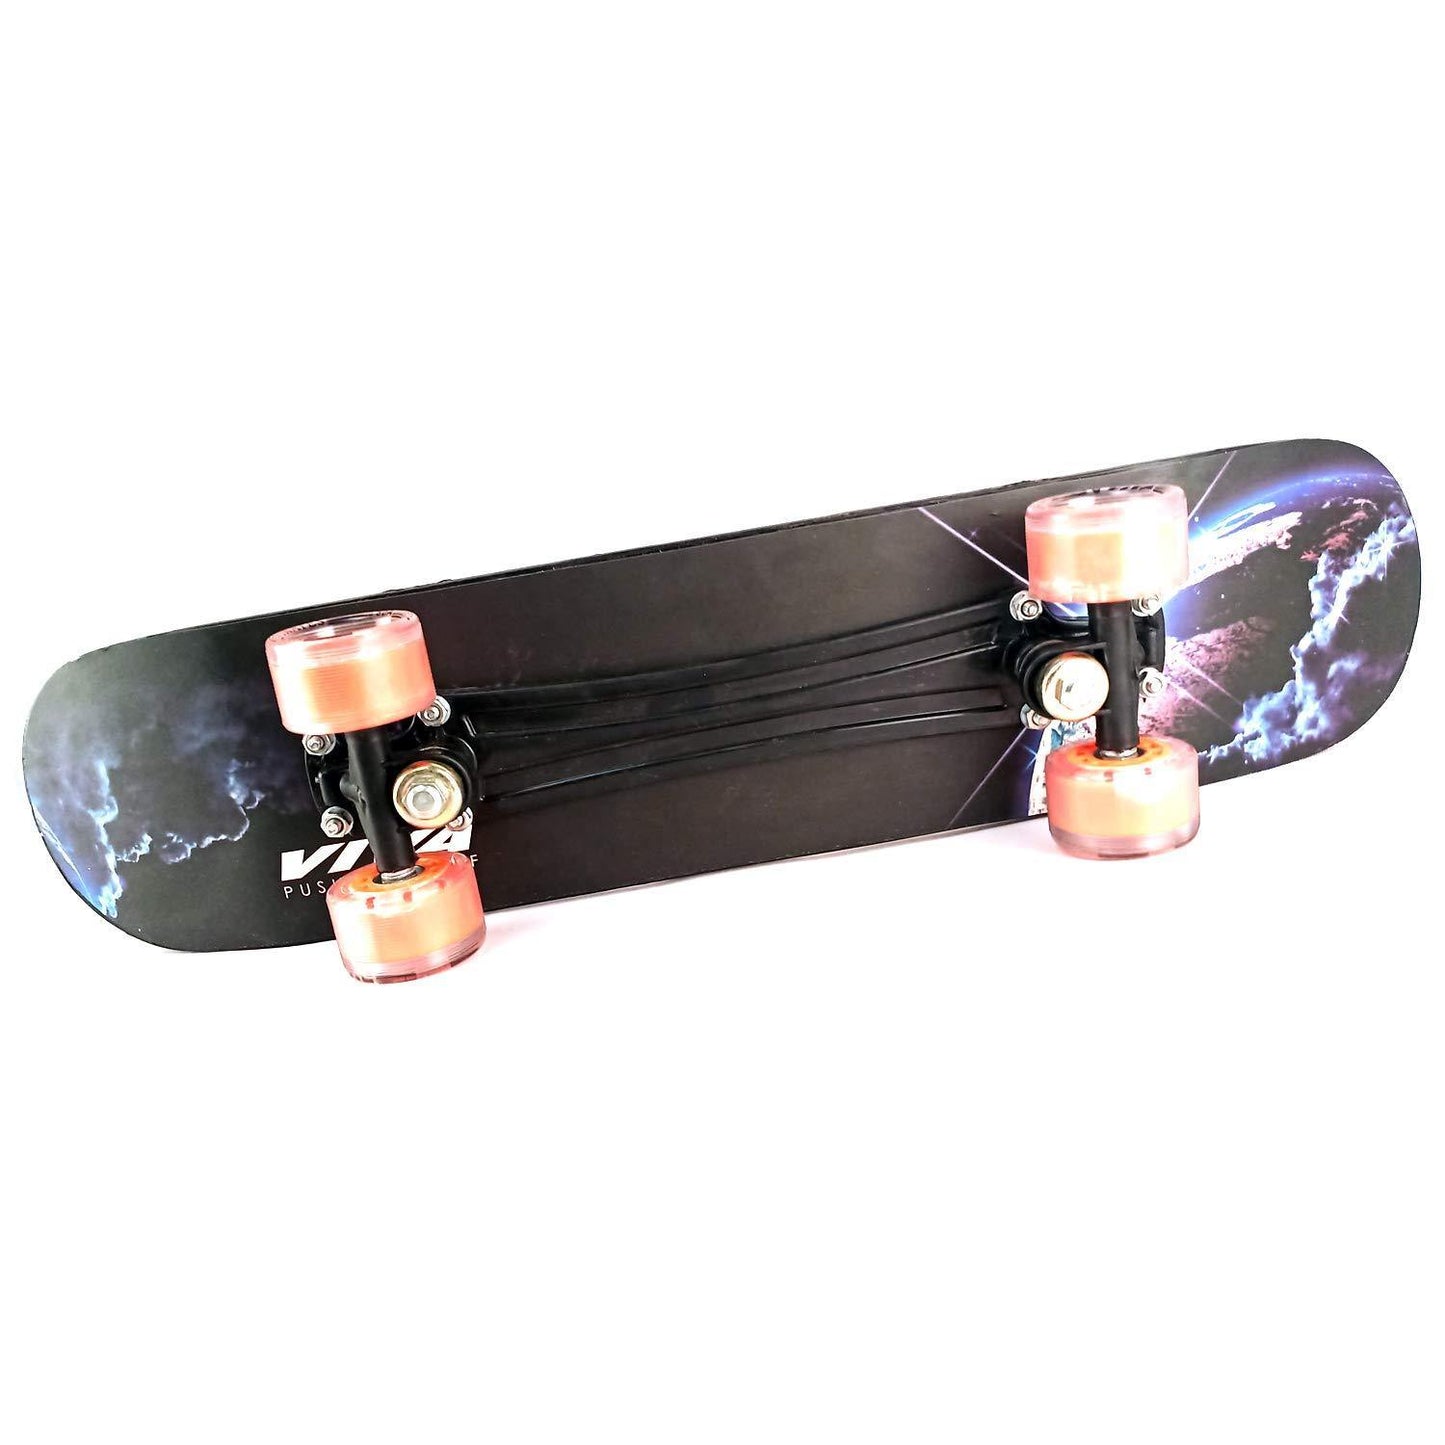 VIVA Wooden Skateboard Senior - Best Price online Prokicksports.com